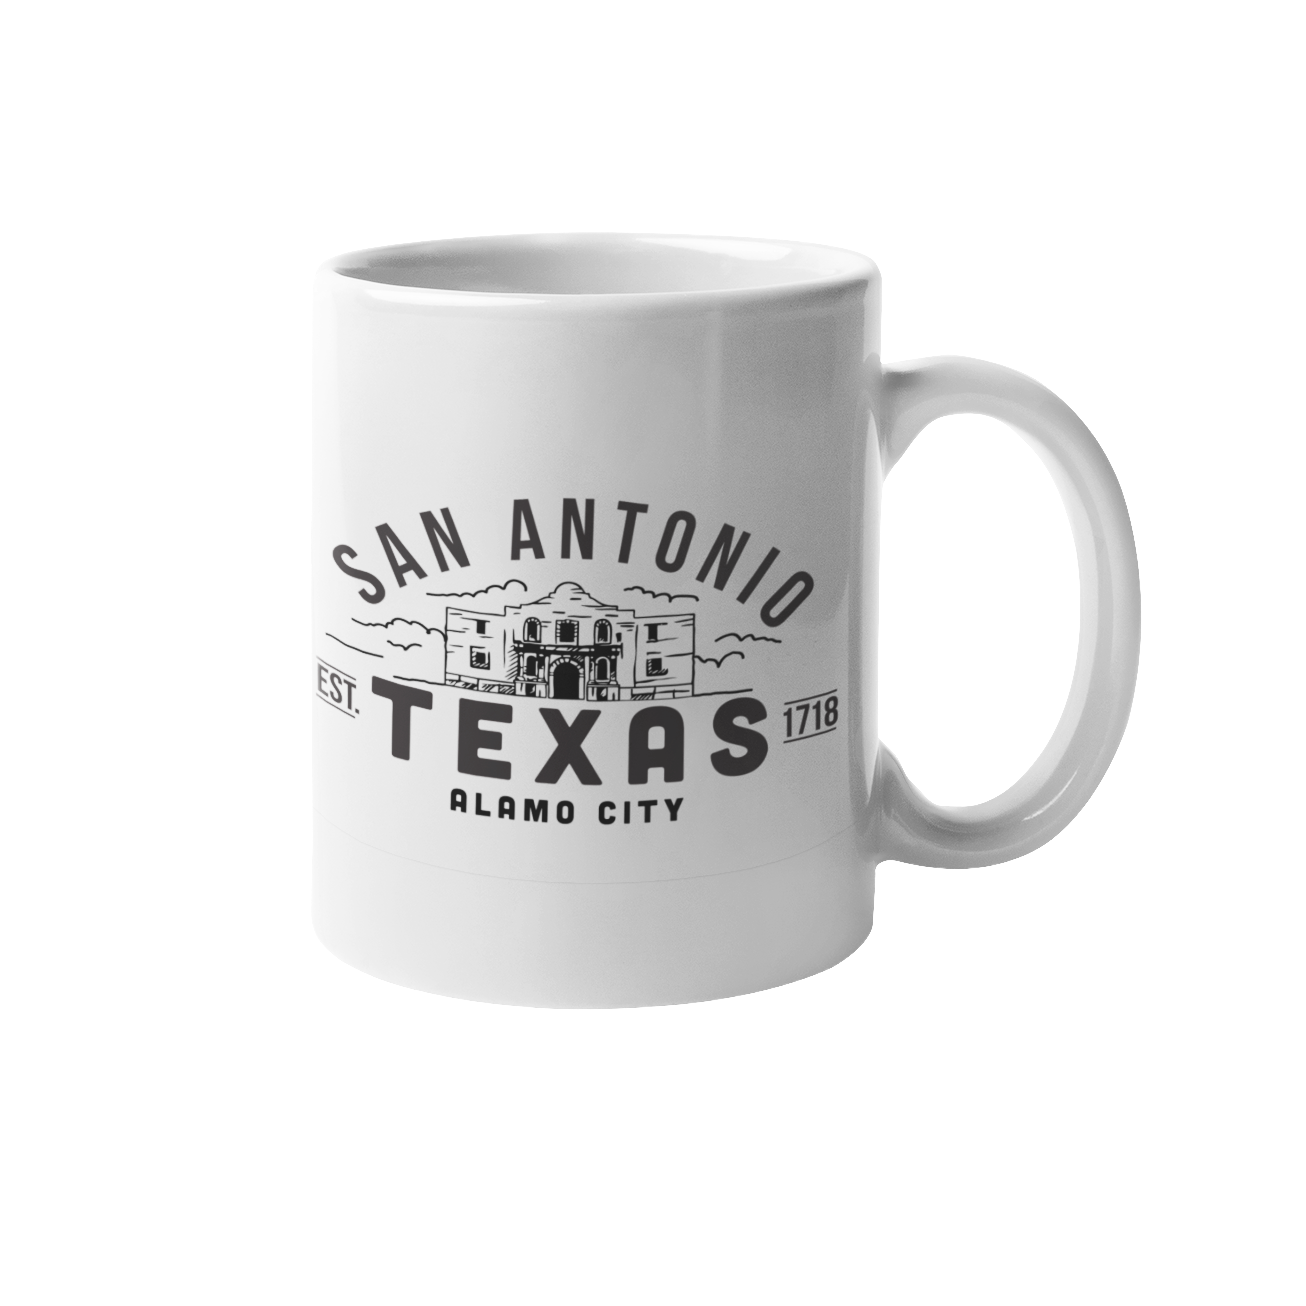 San Antonio Texas - Alamo City - Mug